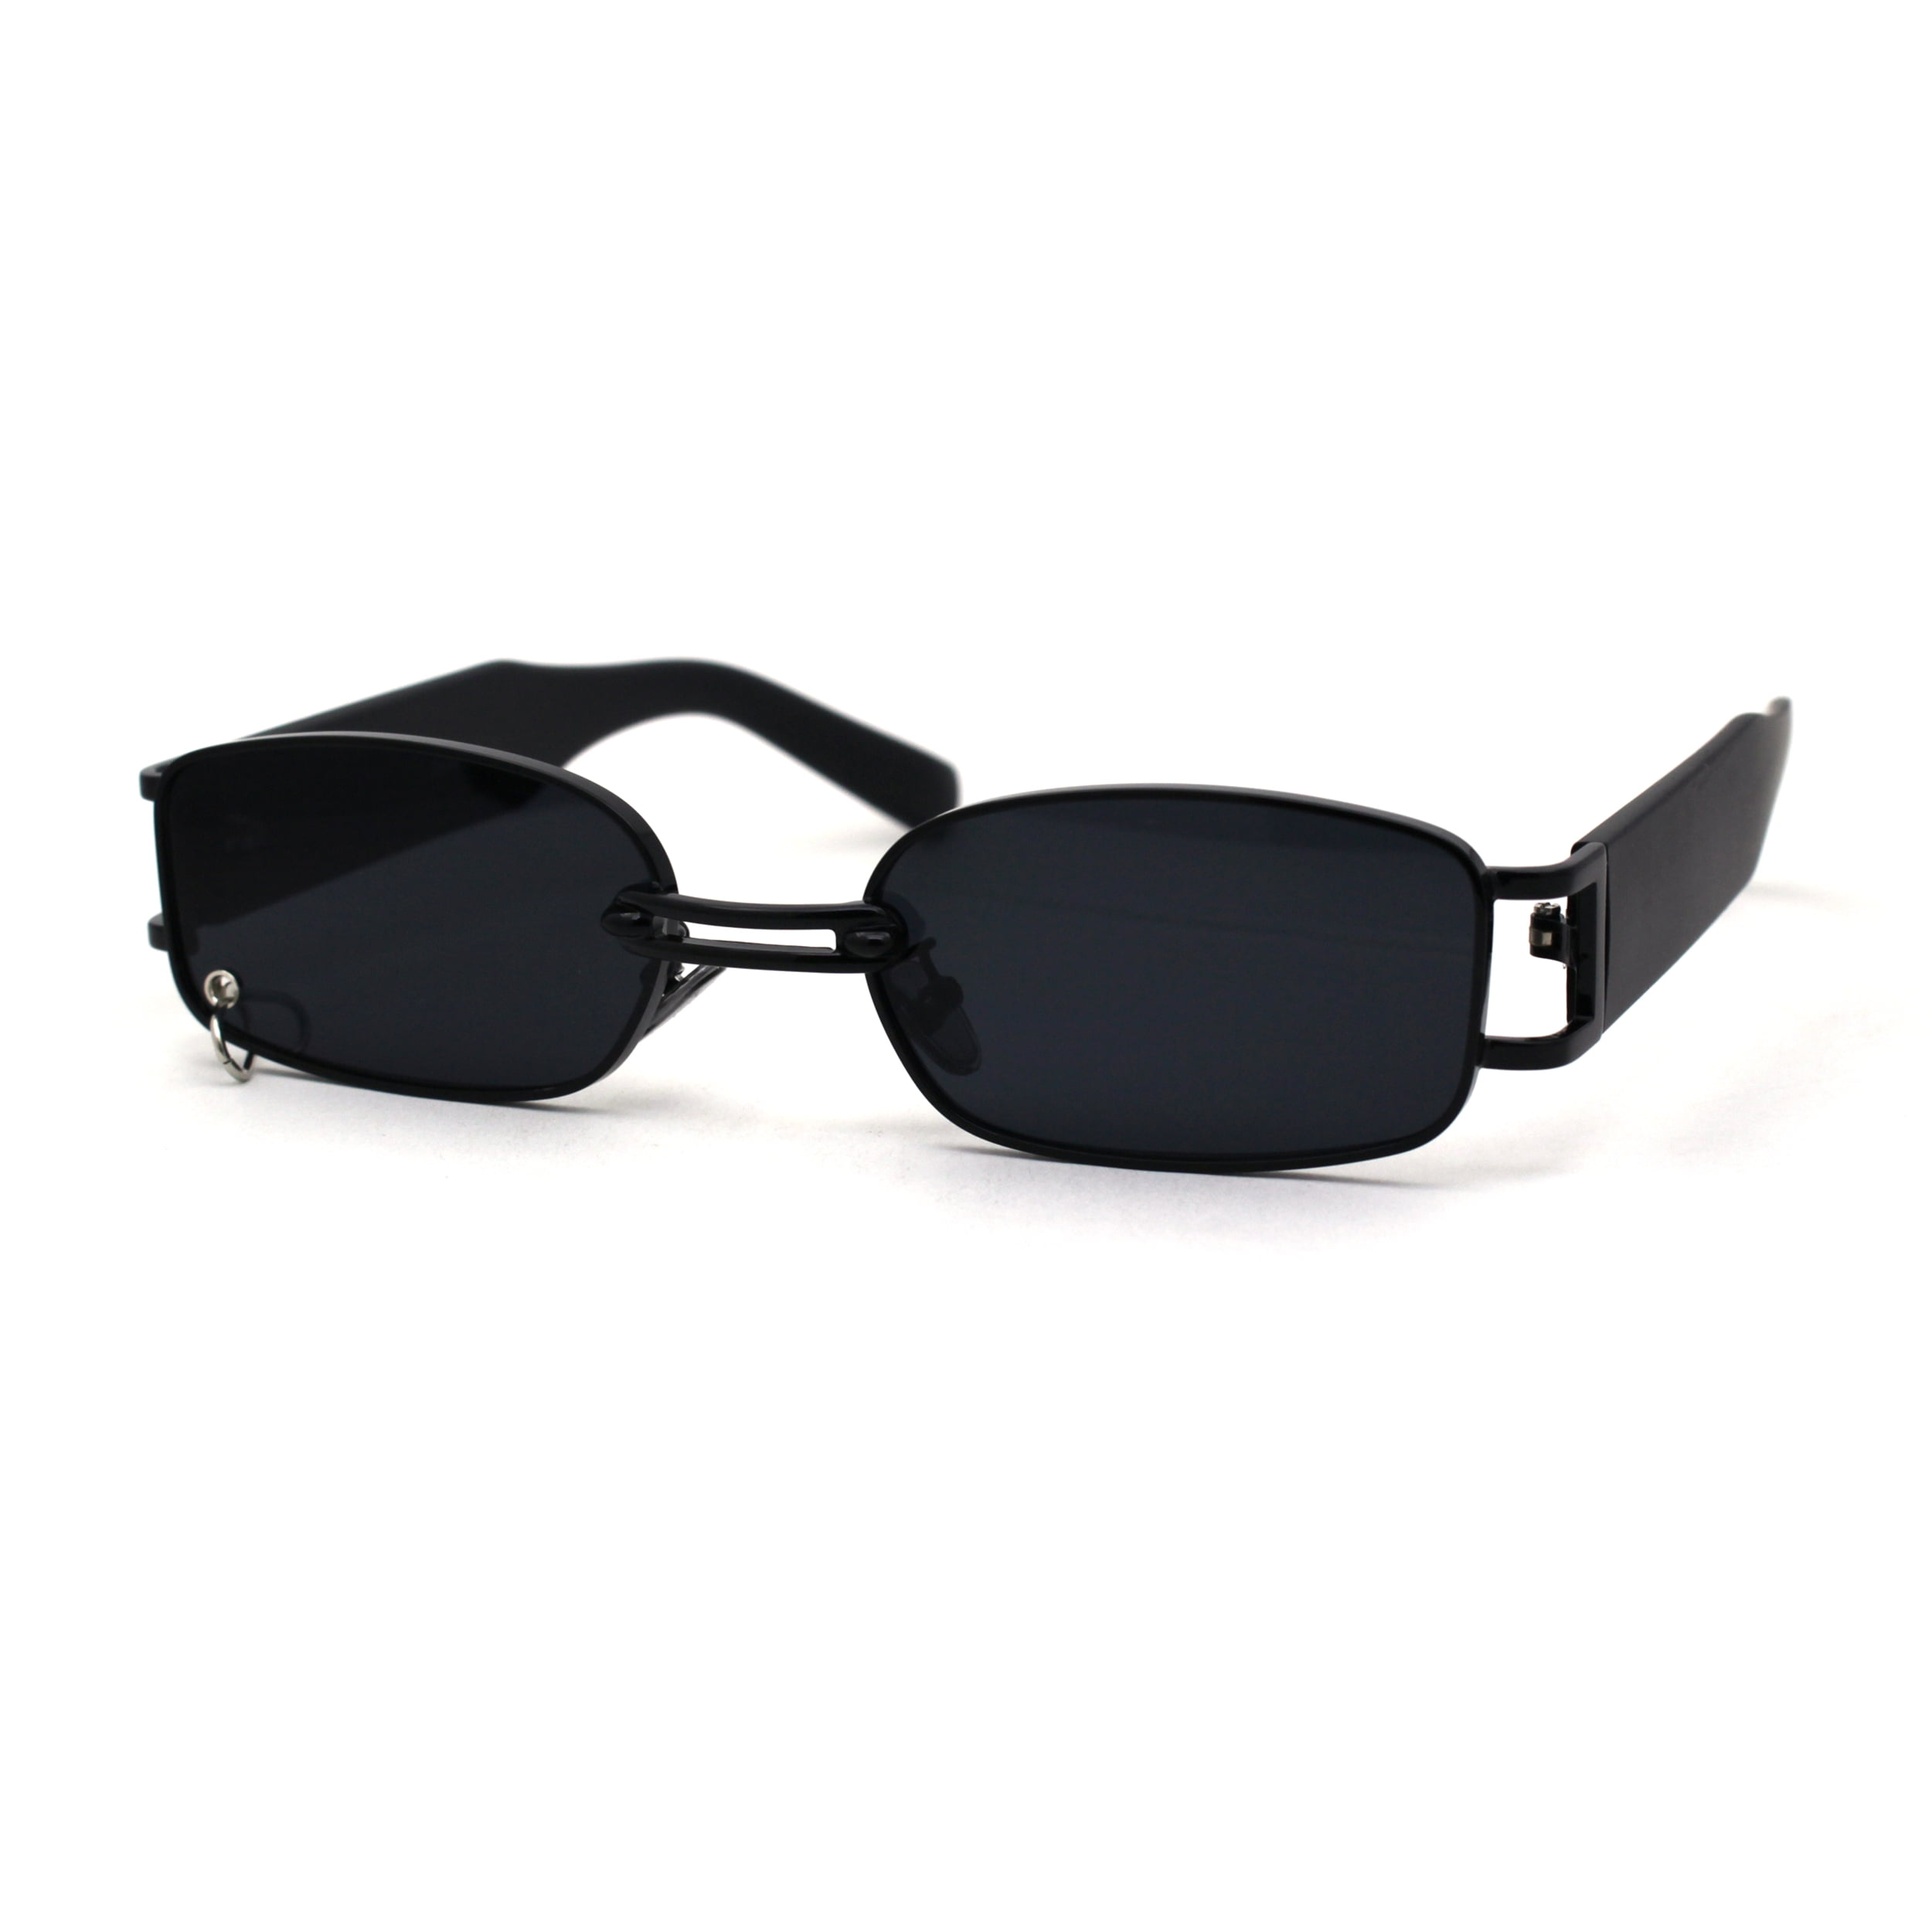 Buy ARYCK SOUL Rectangular Sunglasses Black For Men & Women Online